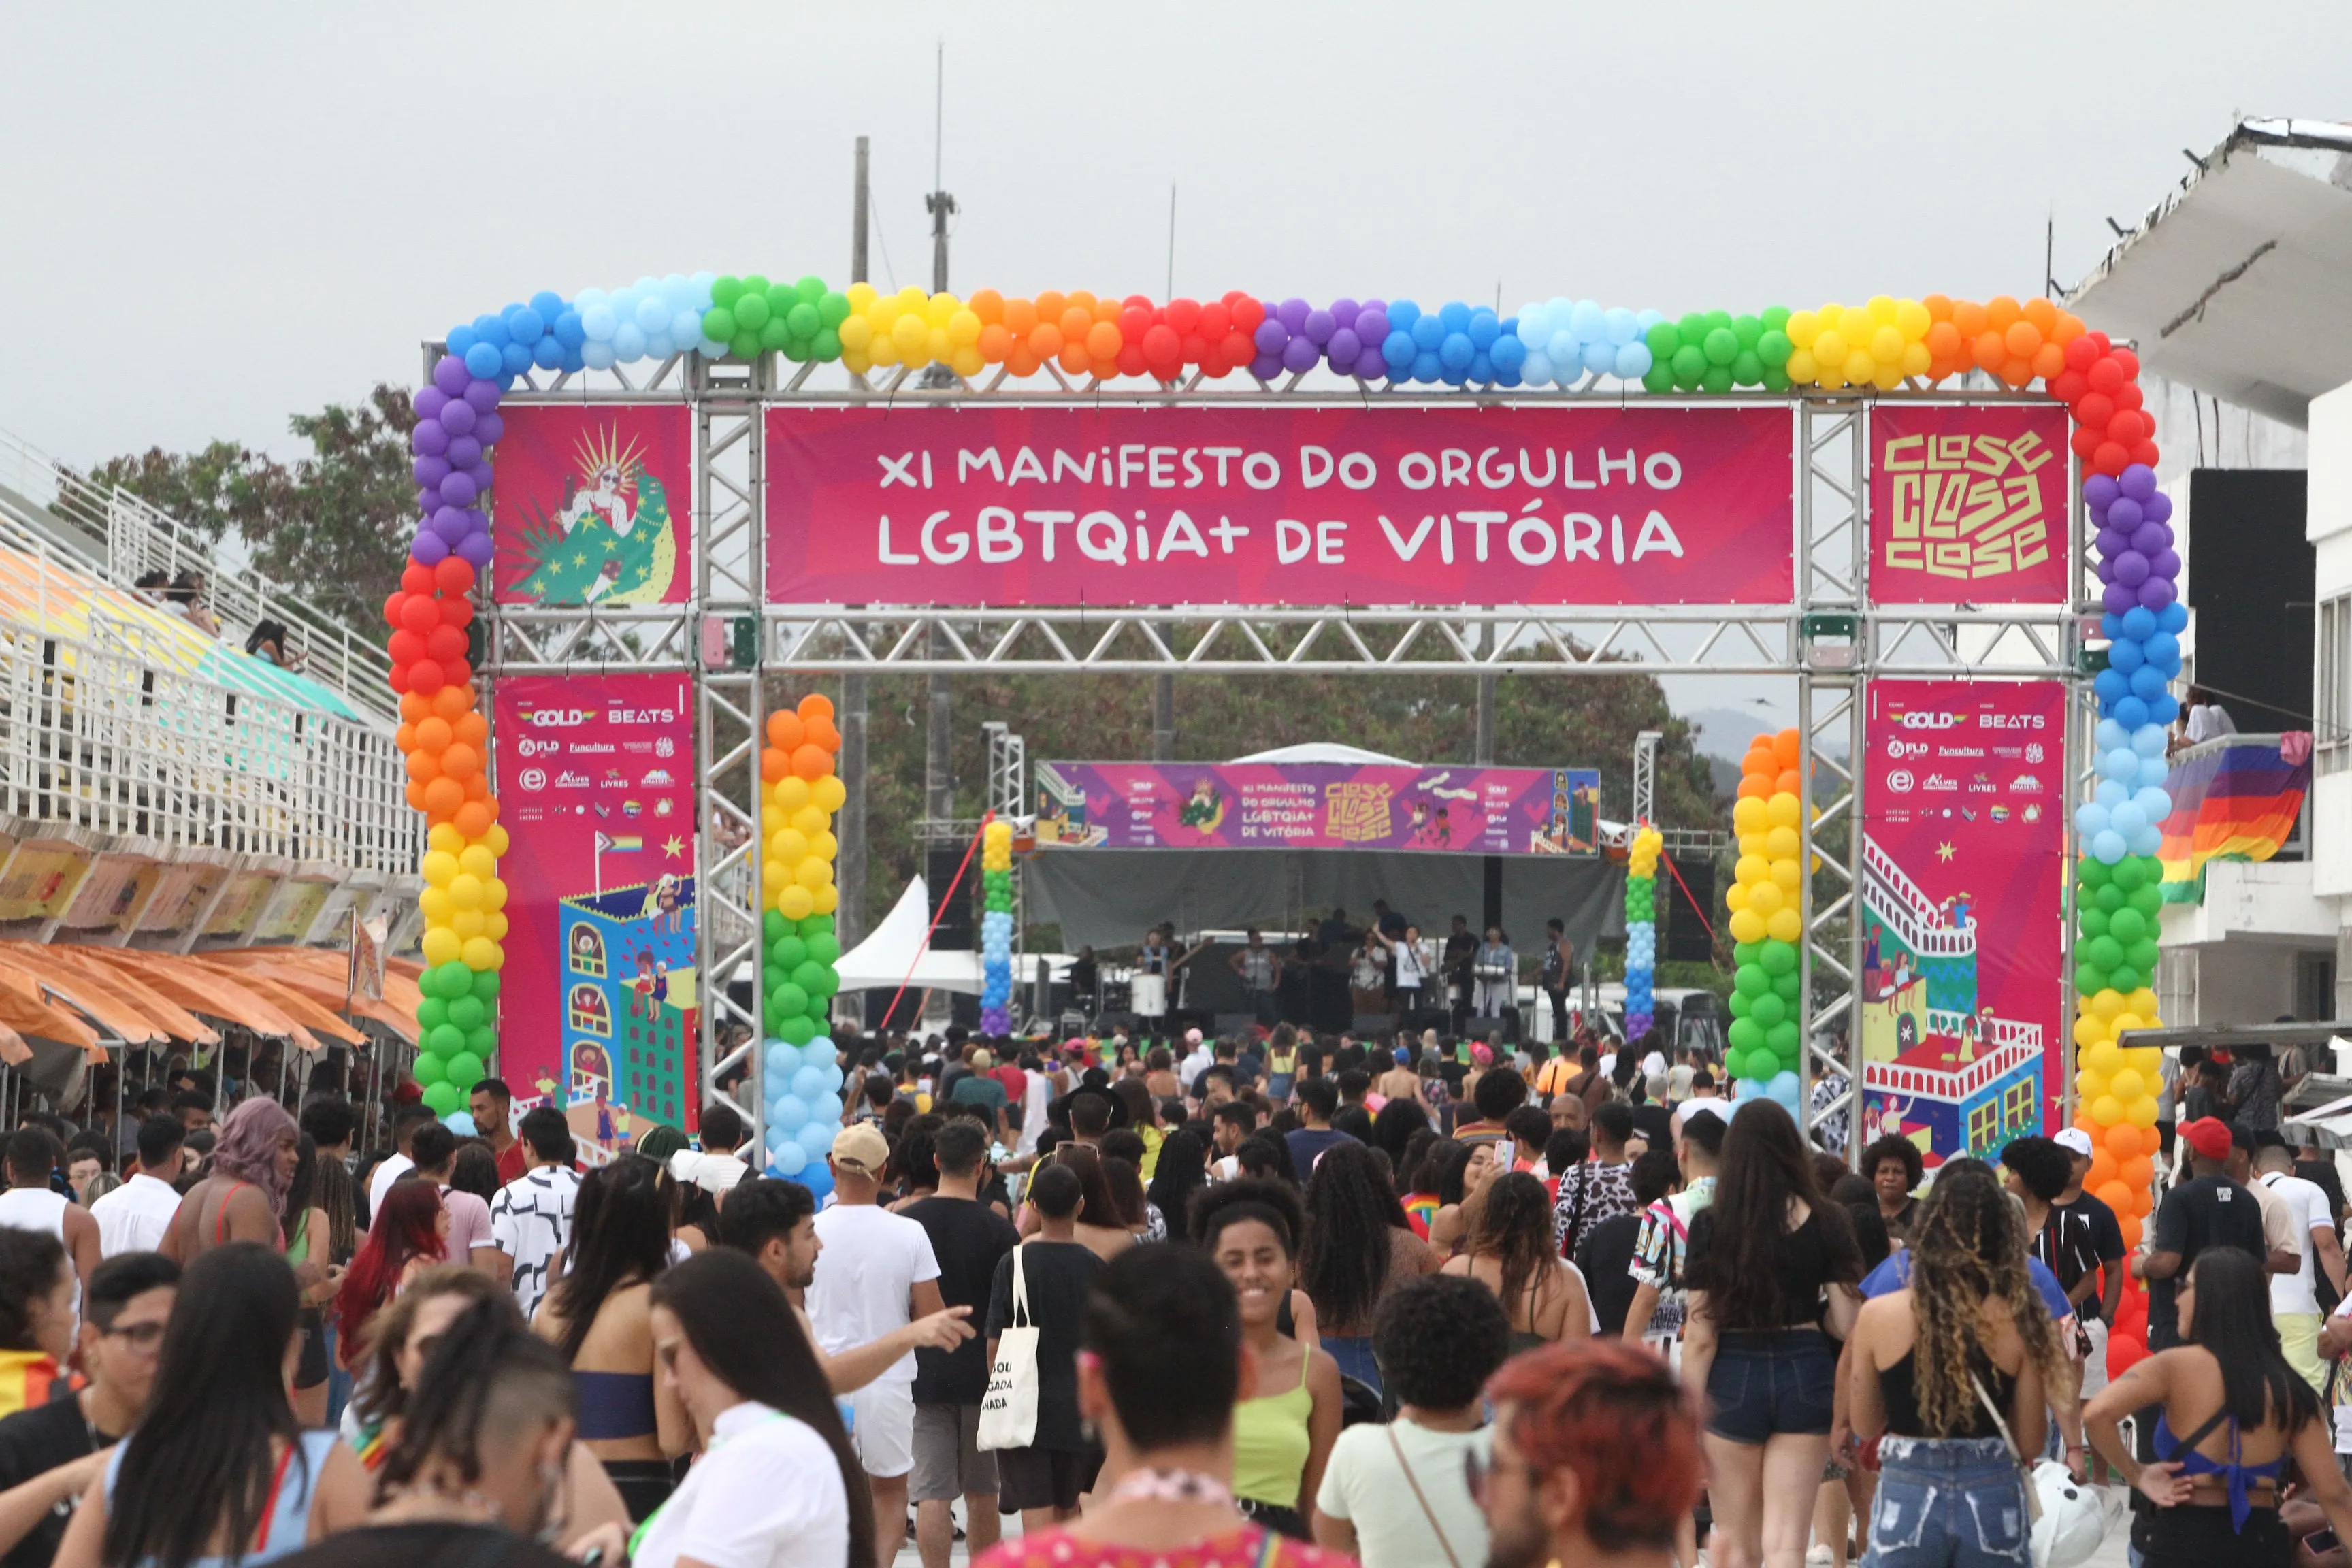 11º edição da Parada LGBTQIA+ de Vitória

Parada LGBTQIA+

11º edição da Parada LGBTQIA+ de Vitória